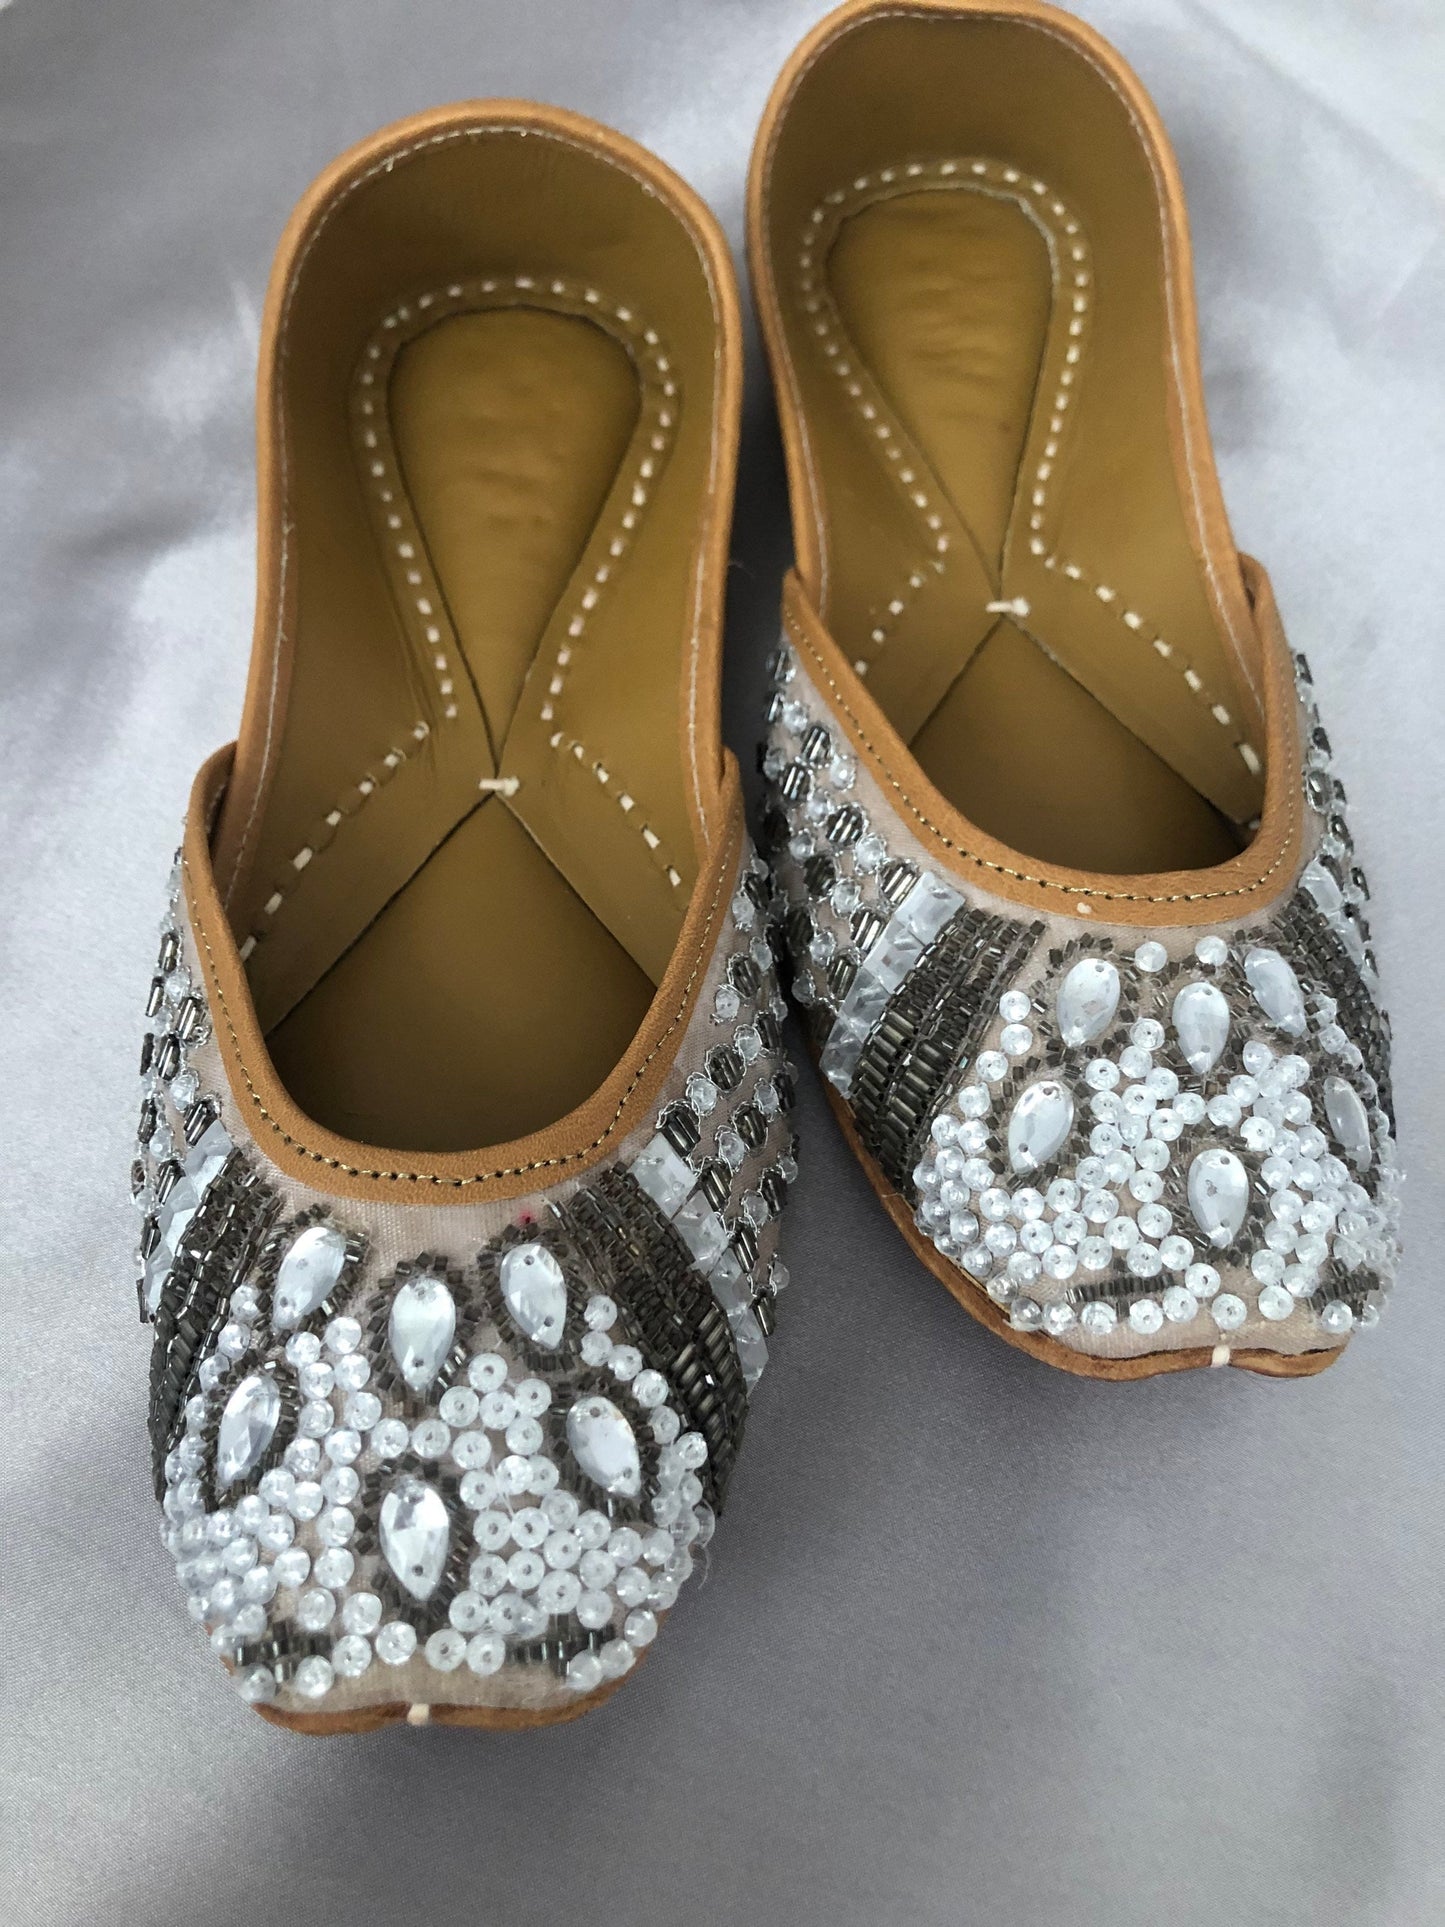 Hot Pink Punjabi Jutti/Jooti/Pakistani Khussa Wedding Shoes Perfect Bridesmaid gifts Leather Cushioned Insole US Size 9 / UK Size 7